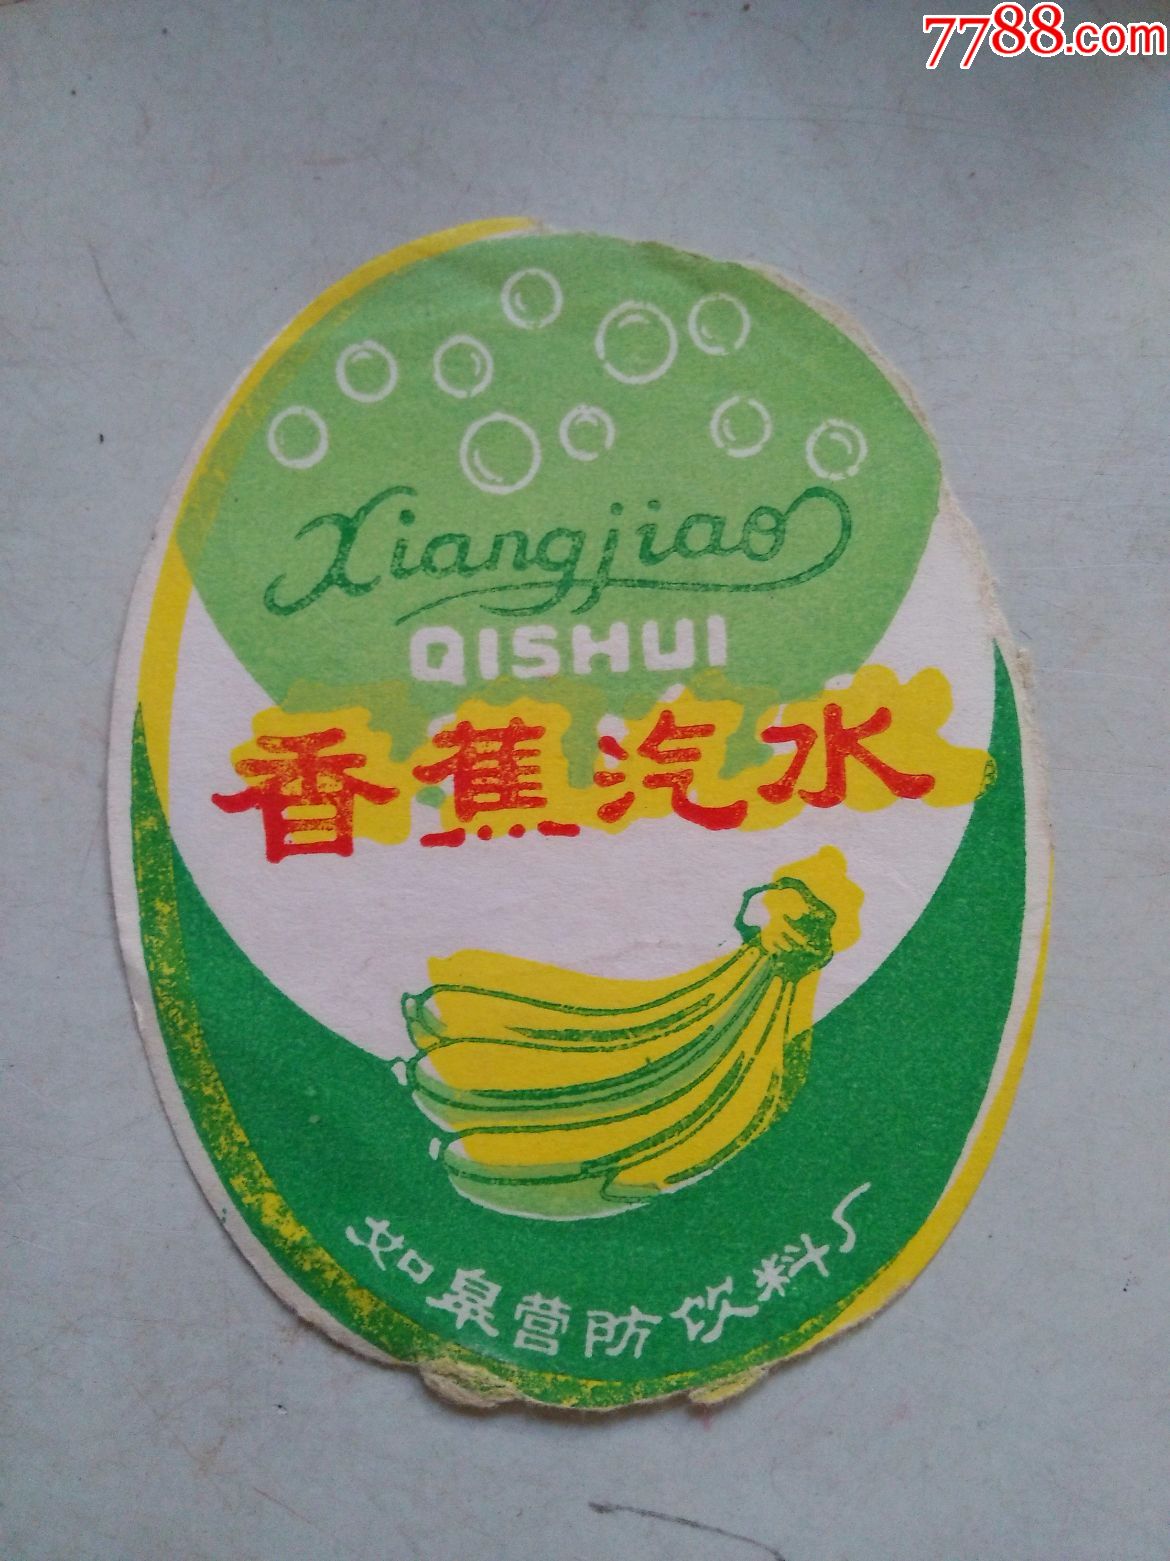 香蕉汽水(商标)